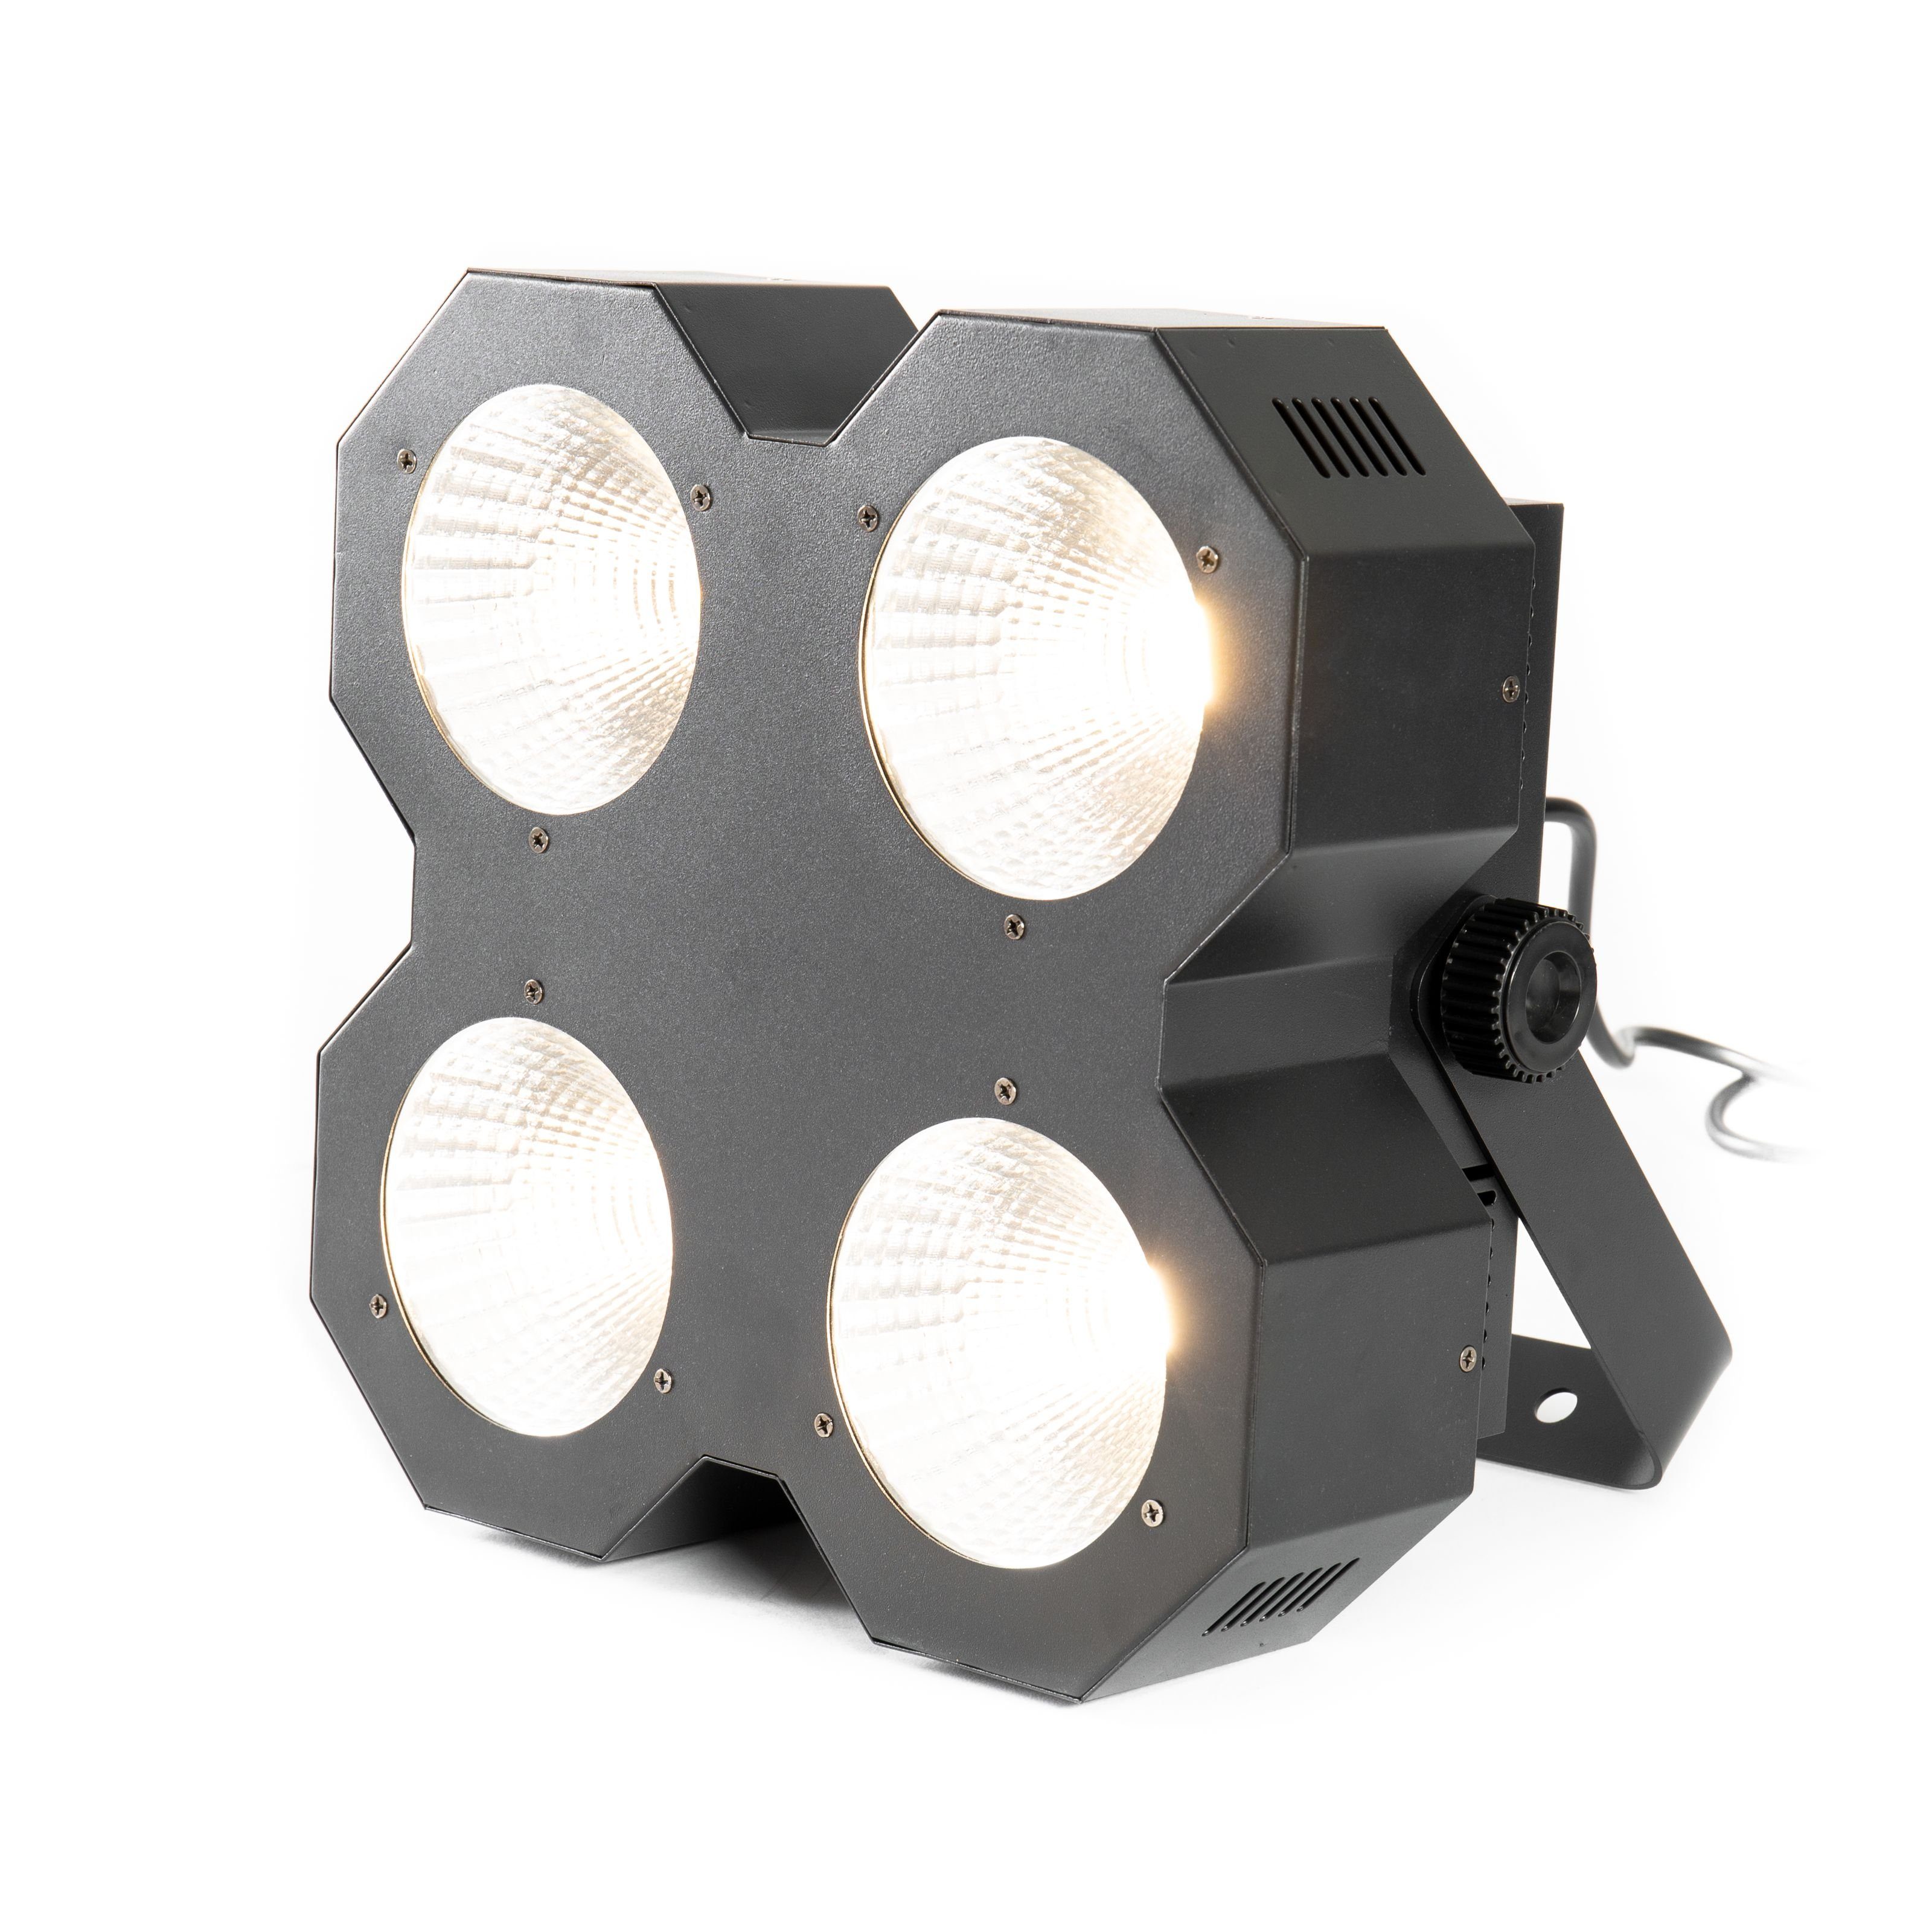 lightmaXX Discolicht, LED Blinder 4 - Blinder